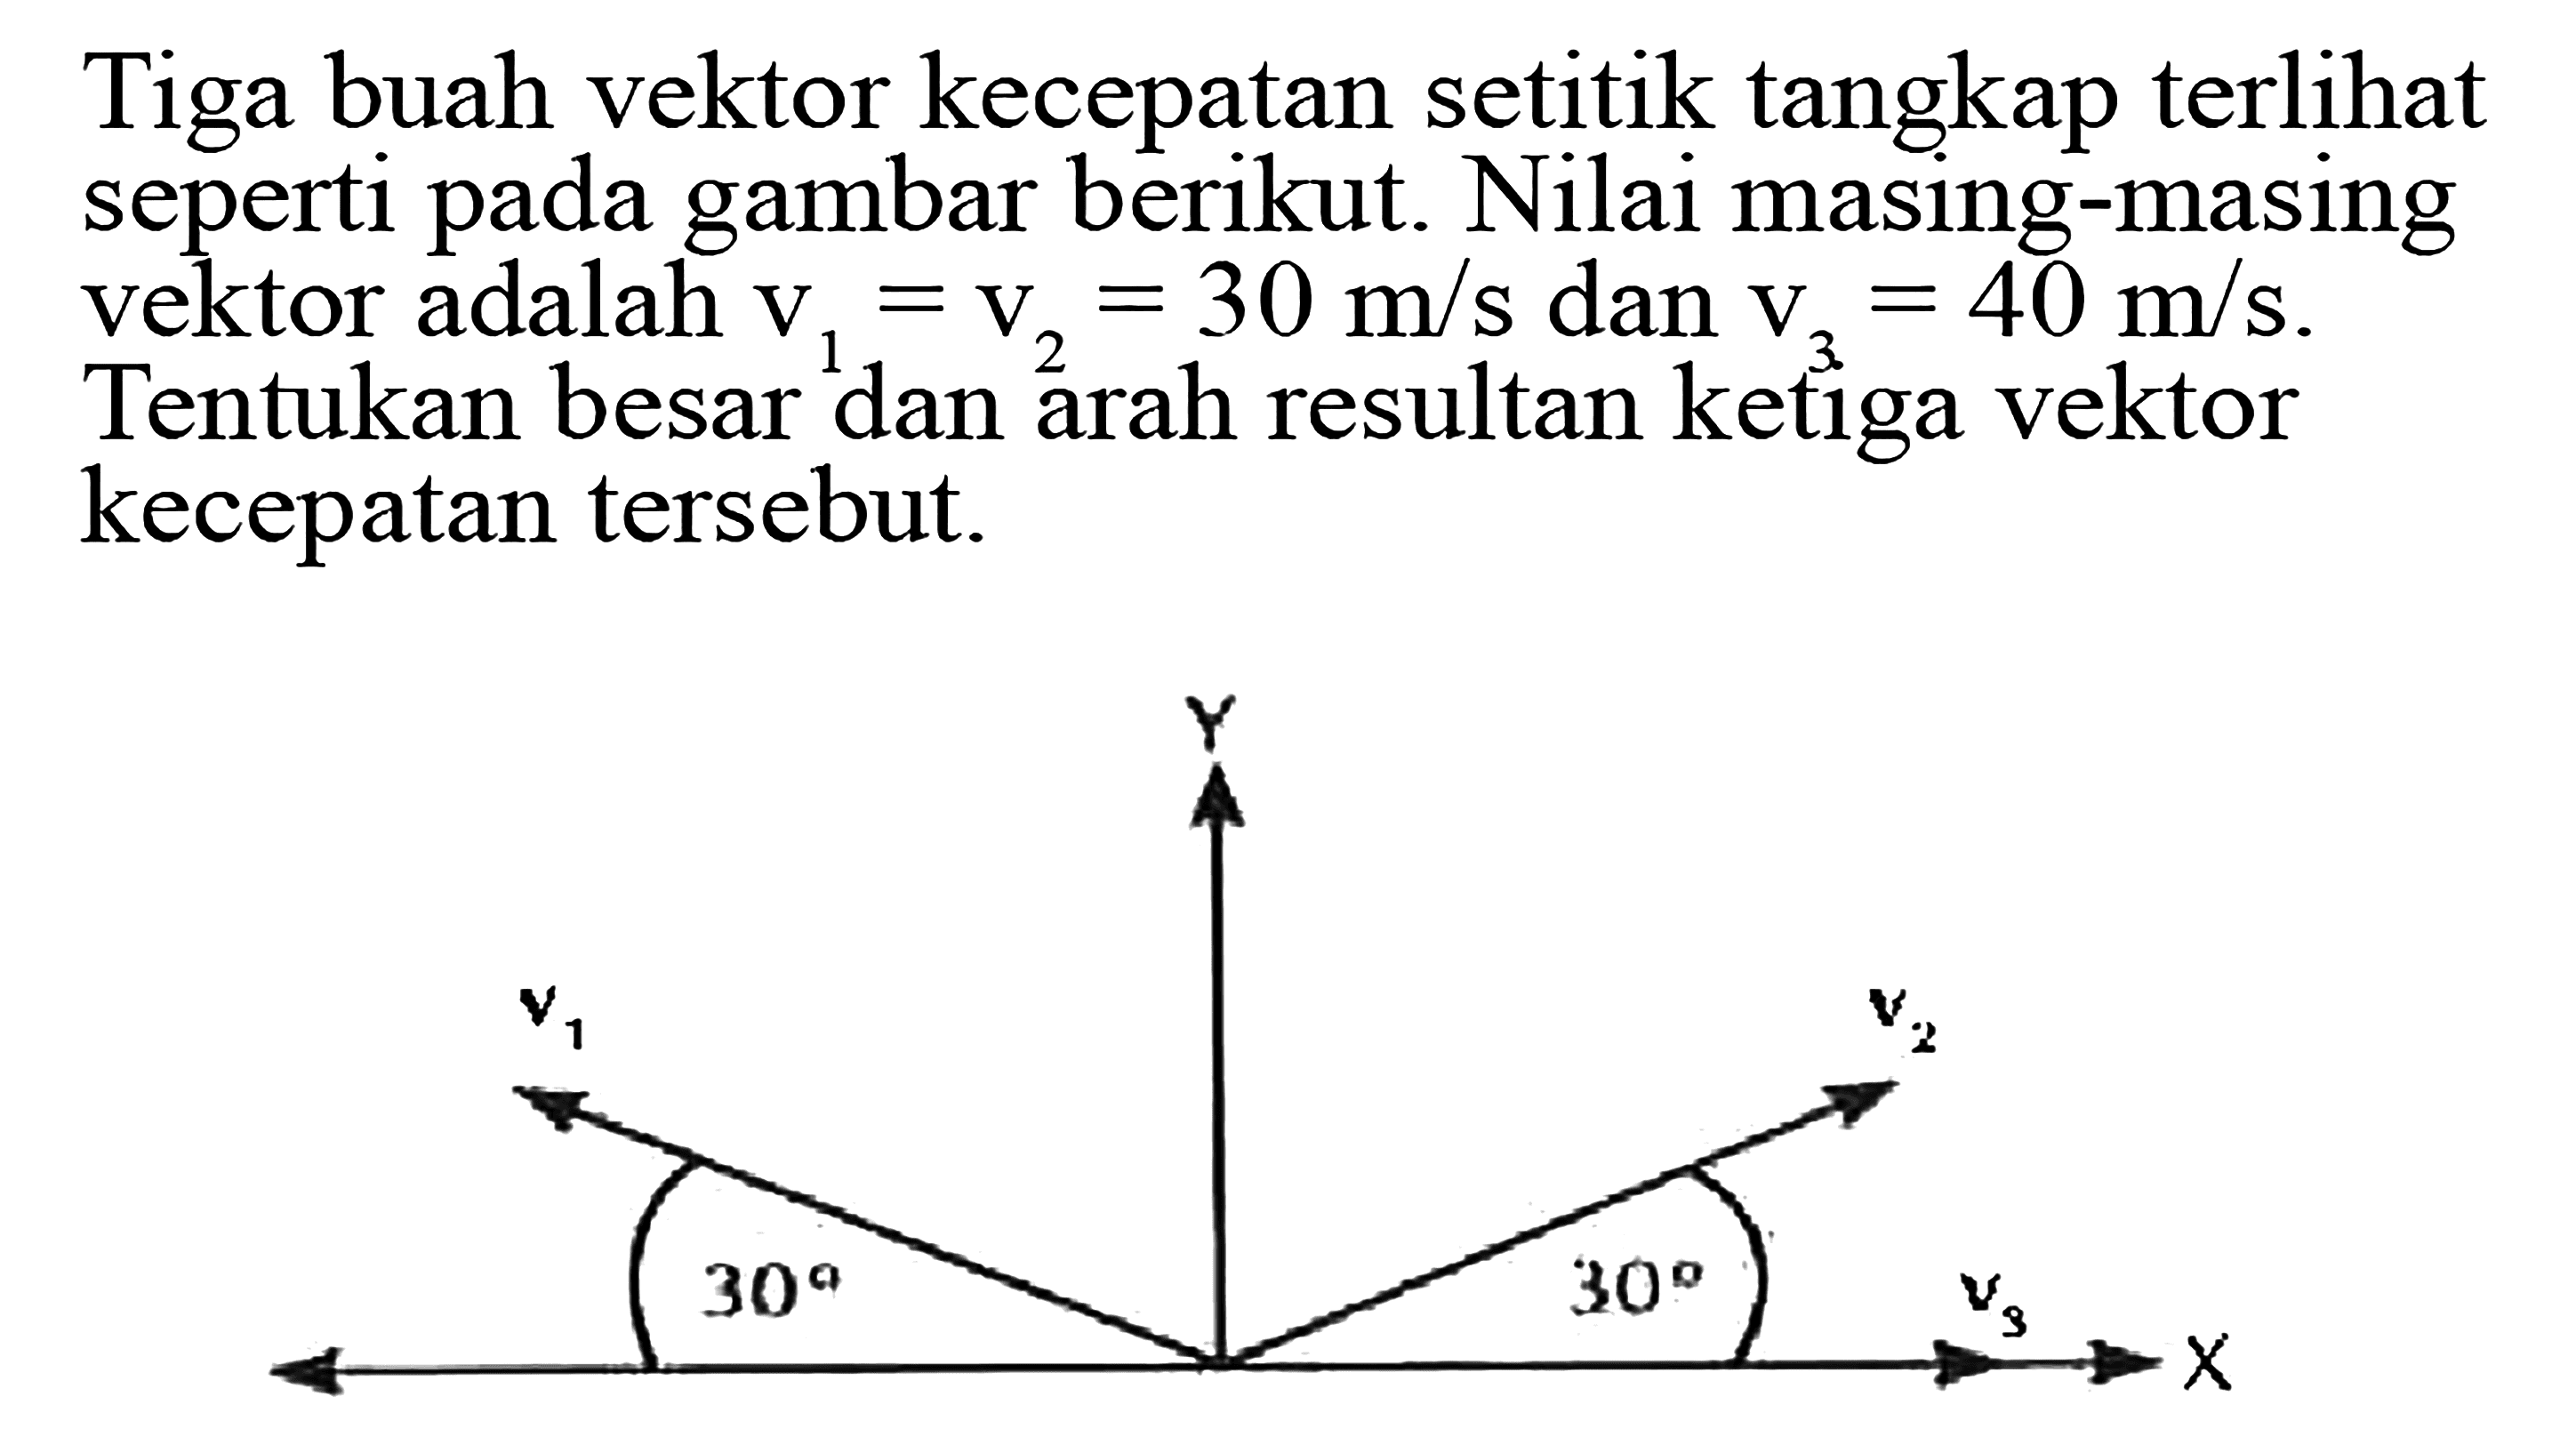 Tiga buah vektor kecepatan setitik tangkap terlihat seperti pada gambar berikut. Nilai masing-masing vektor adalah v1= V2 = 30 m/s dan V3 = 40 m/s. Tentukan besar dan arah resultan ketiga vektor kecepatan tersebut.